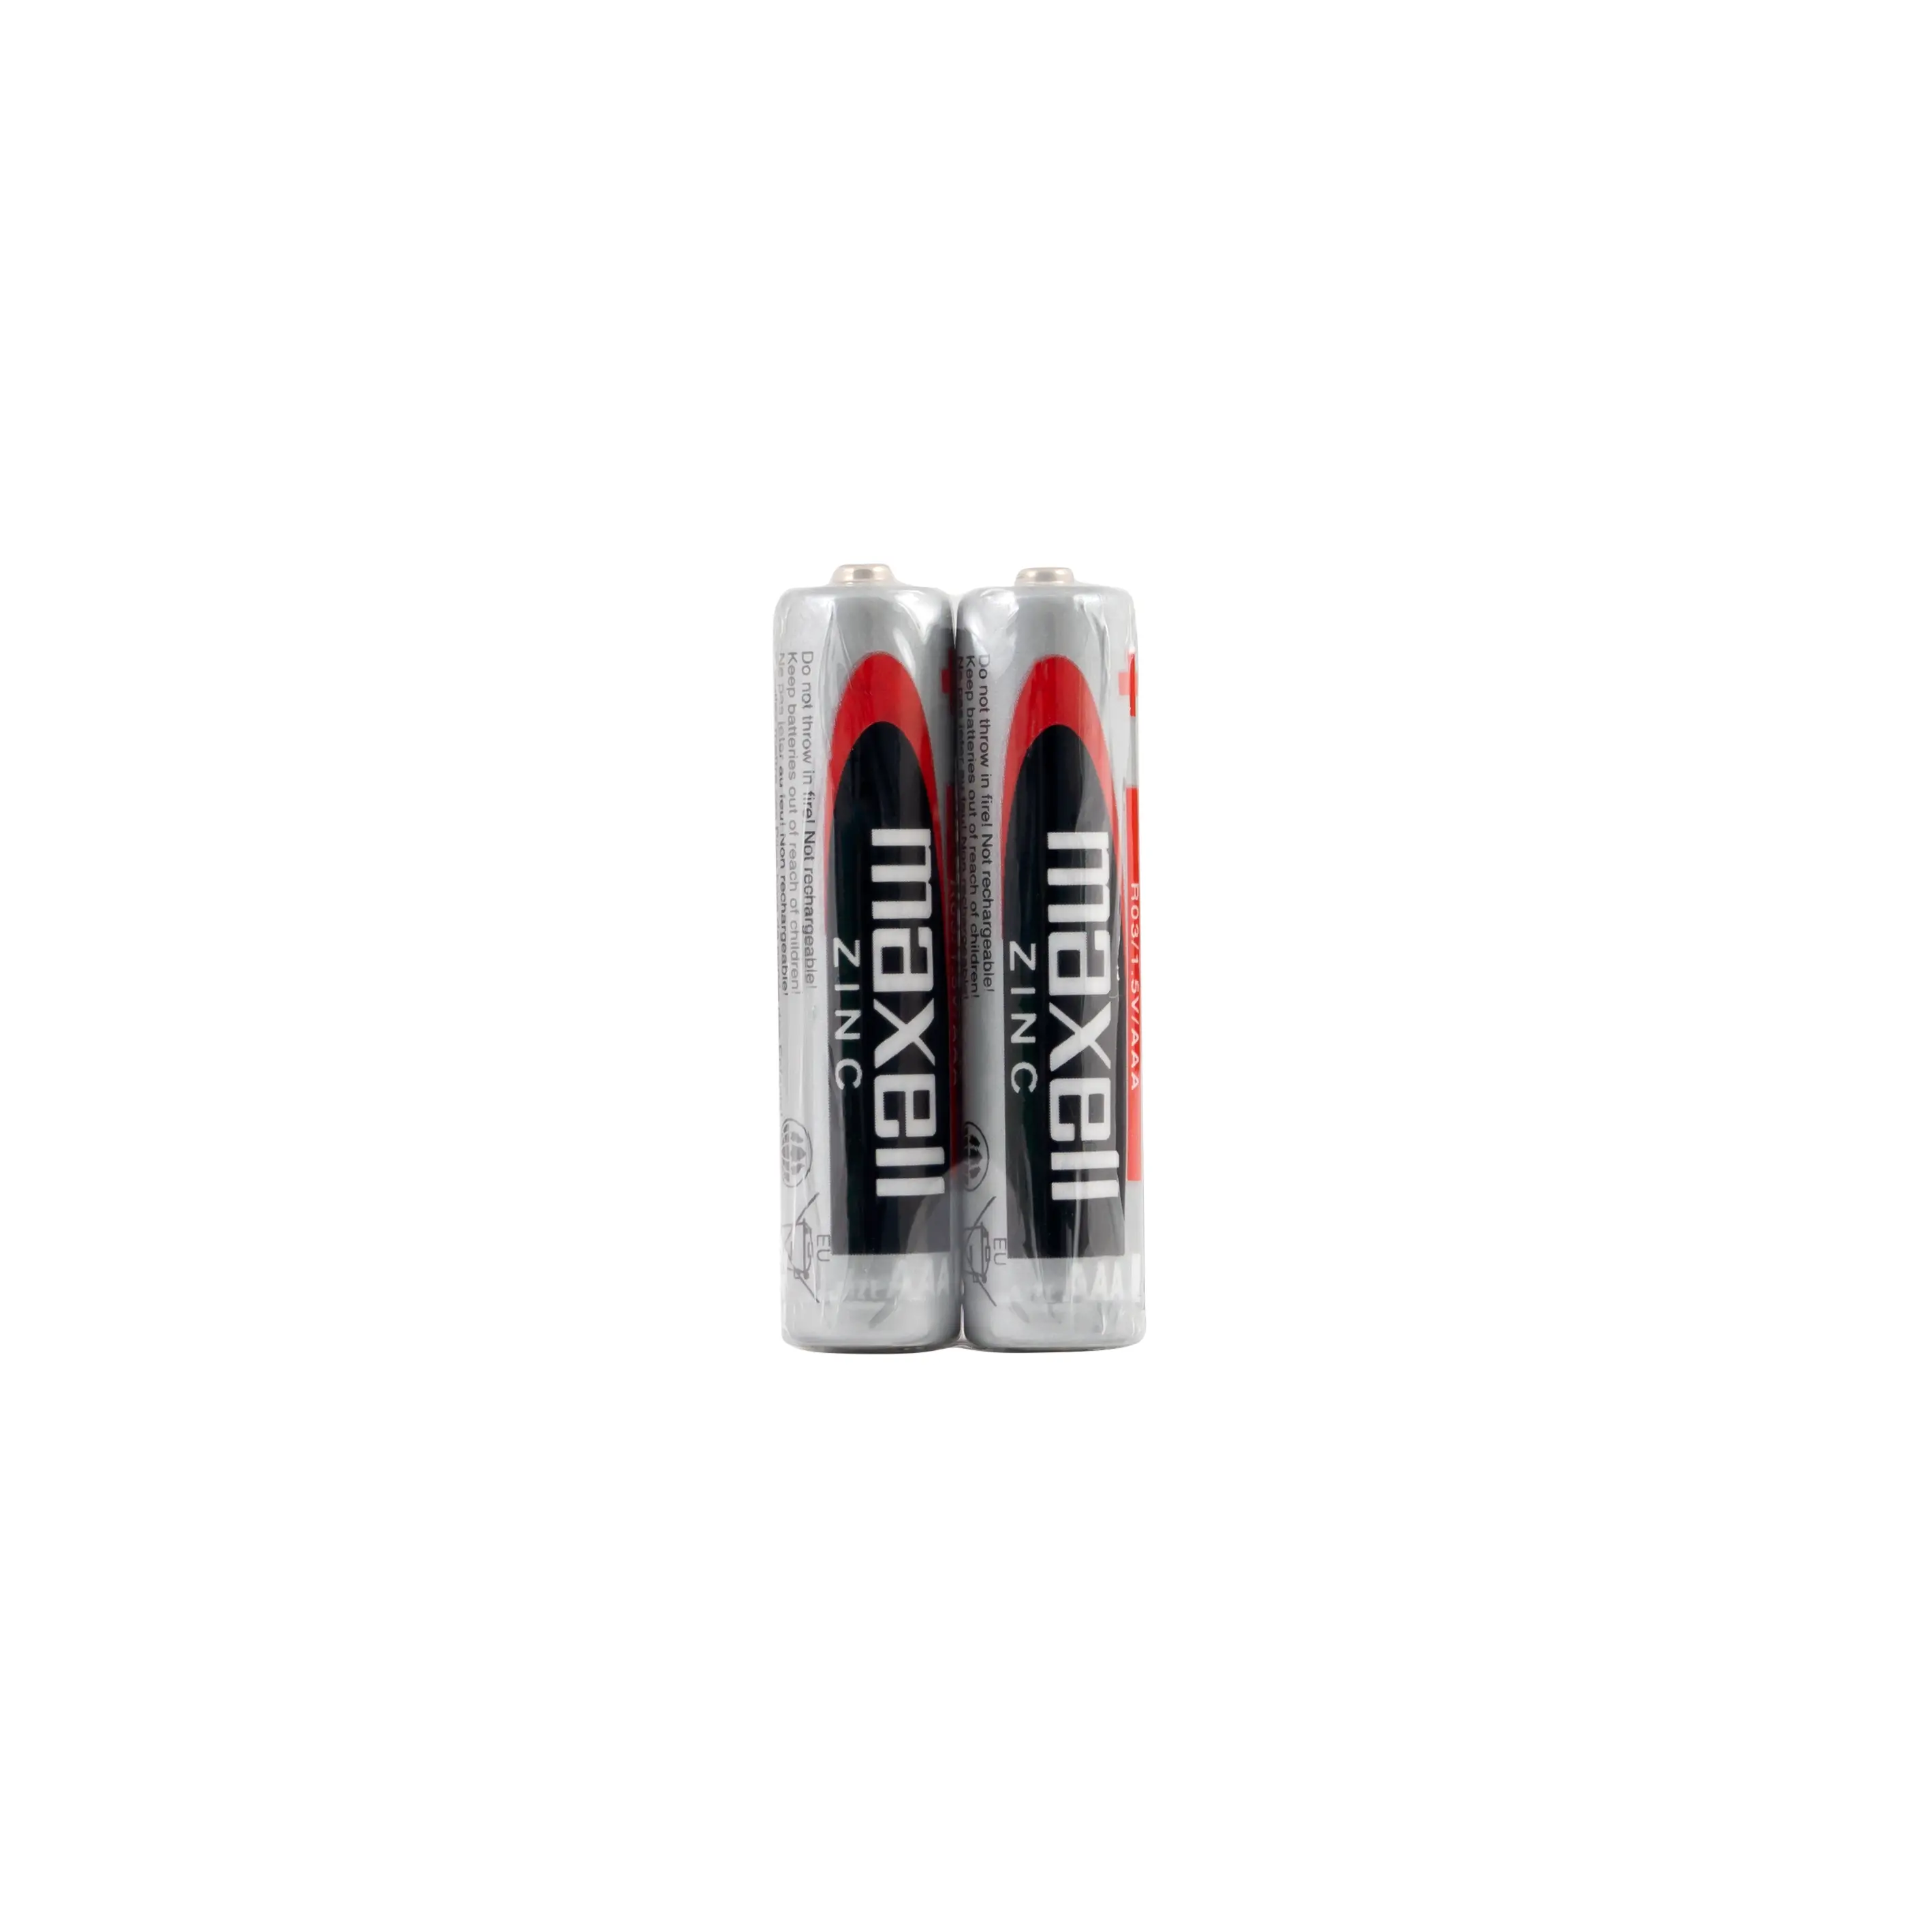 Цинково Манганова батерия MAXELL R03 1,5V /2 бр. в опаковка/ - image 1